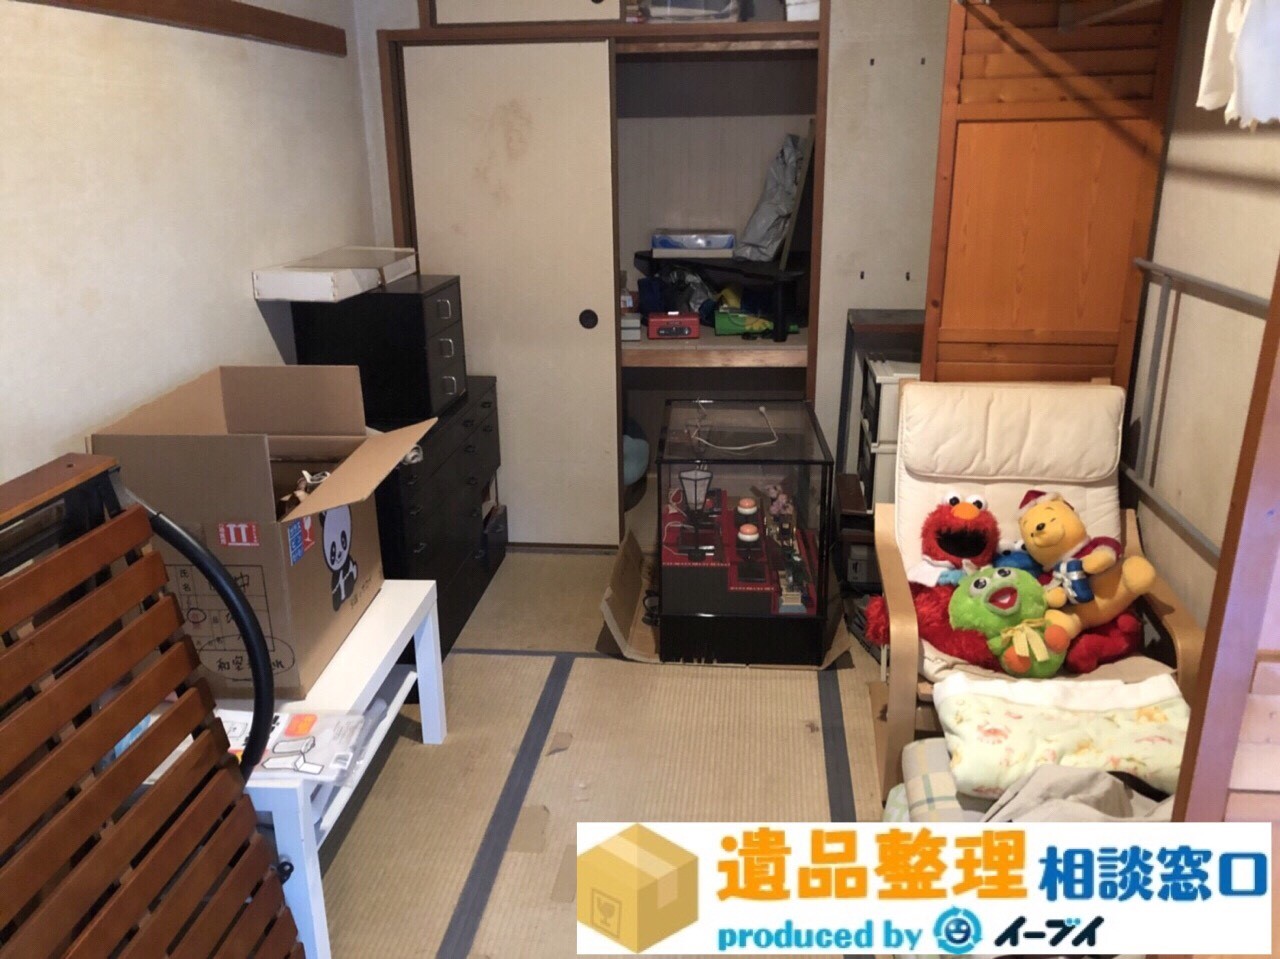 大阪府摂津市で押入れの生活用品や家具の遺品整処分。のアイキャッチ